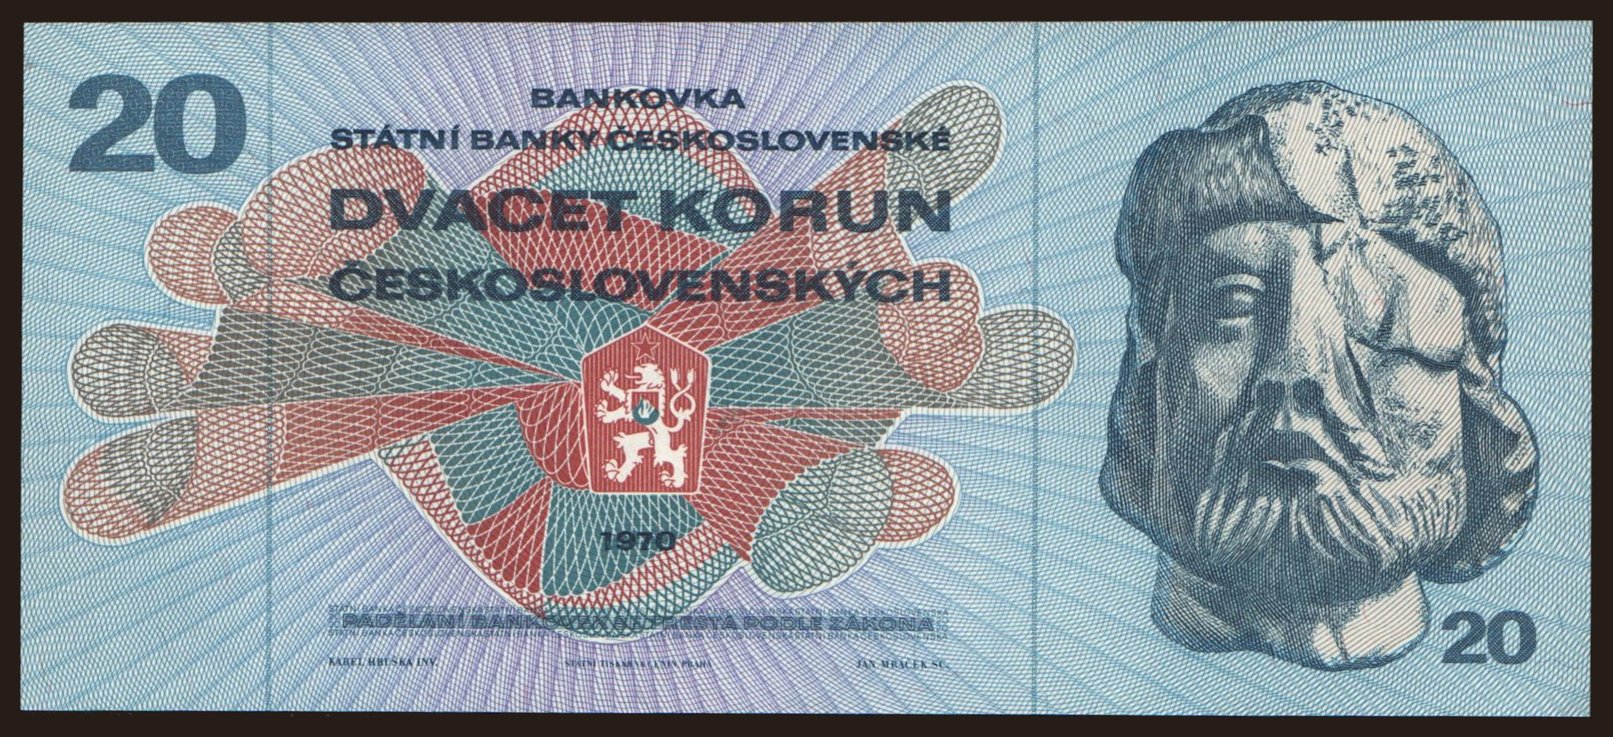 20 korun, 1970